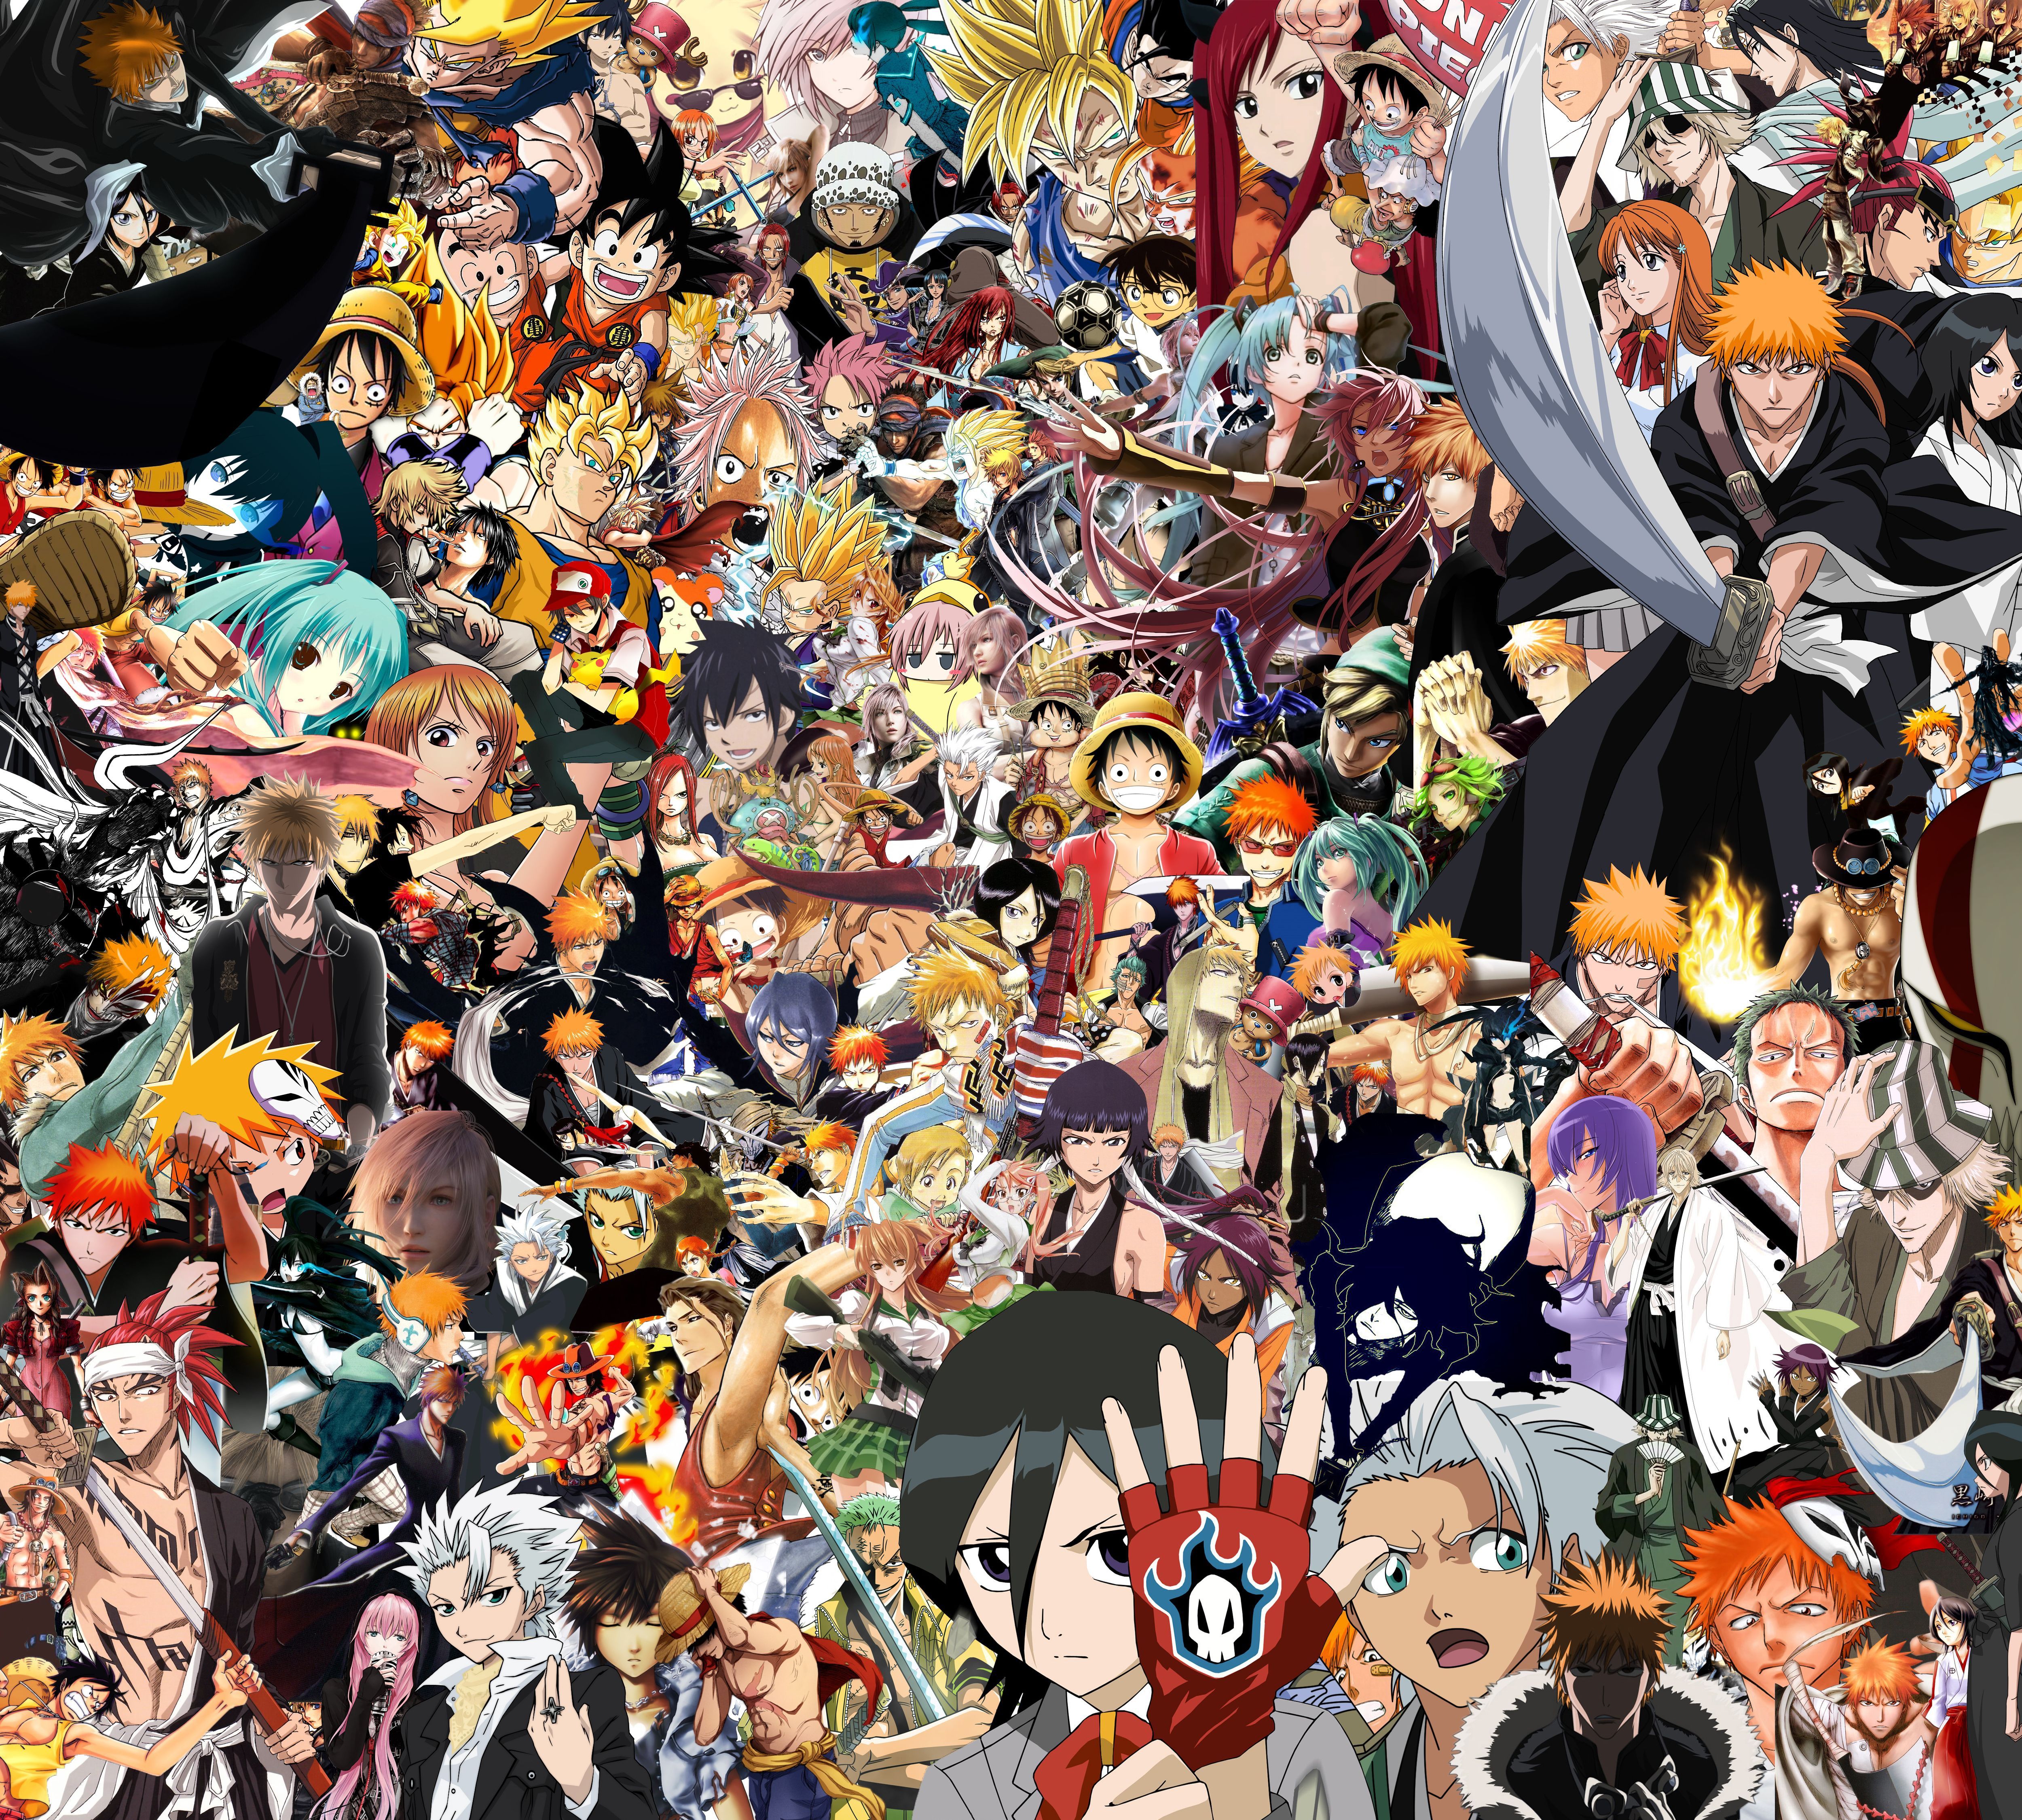 Best Anime Wallpaper Ever